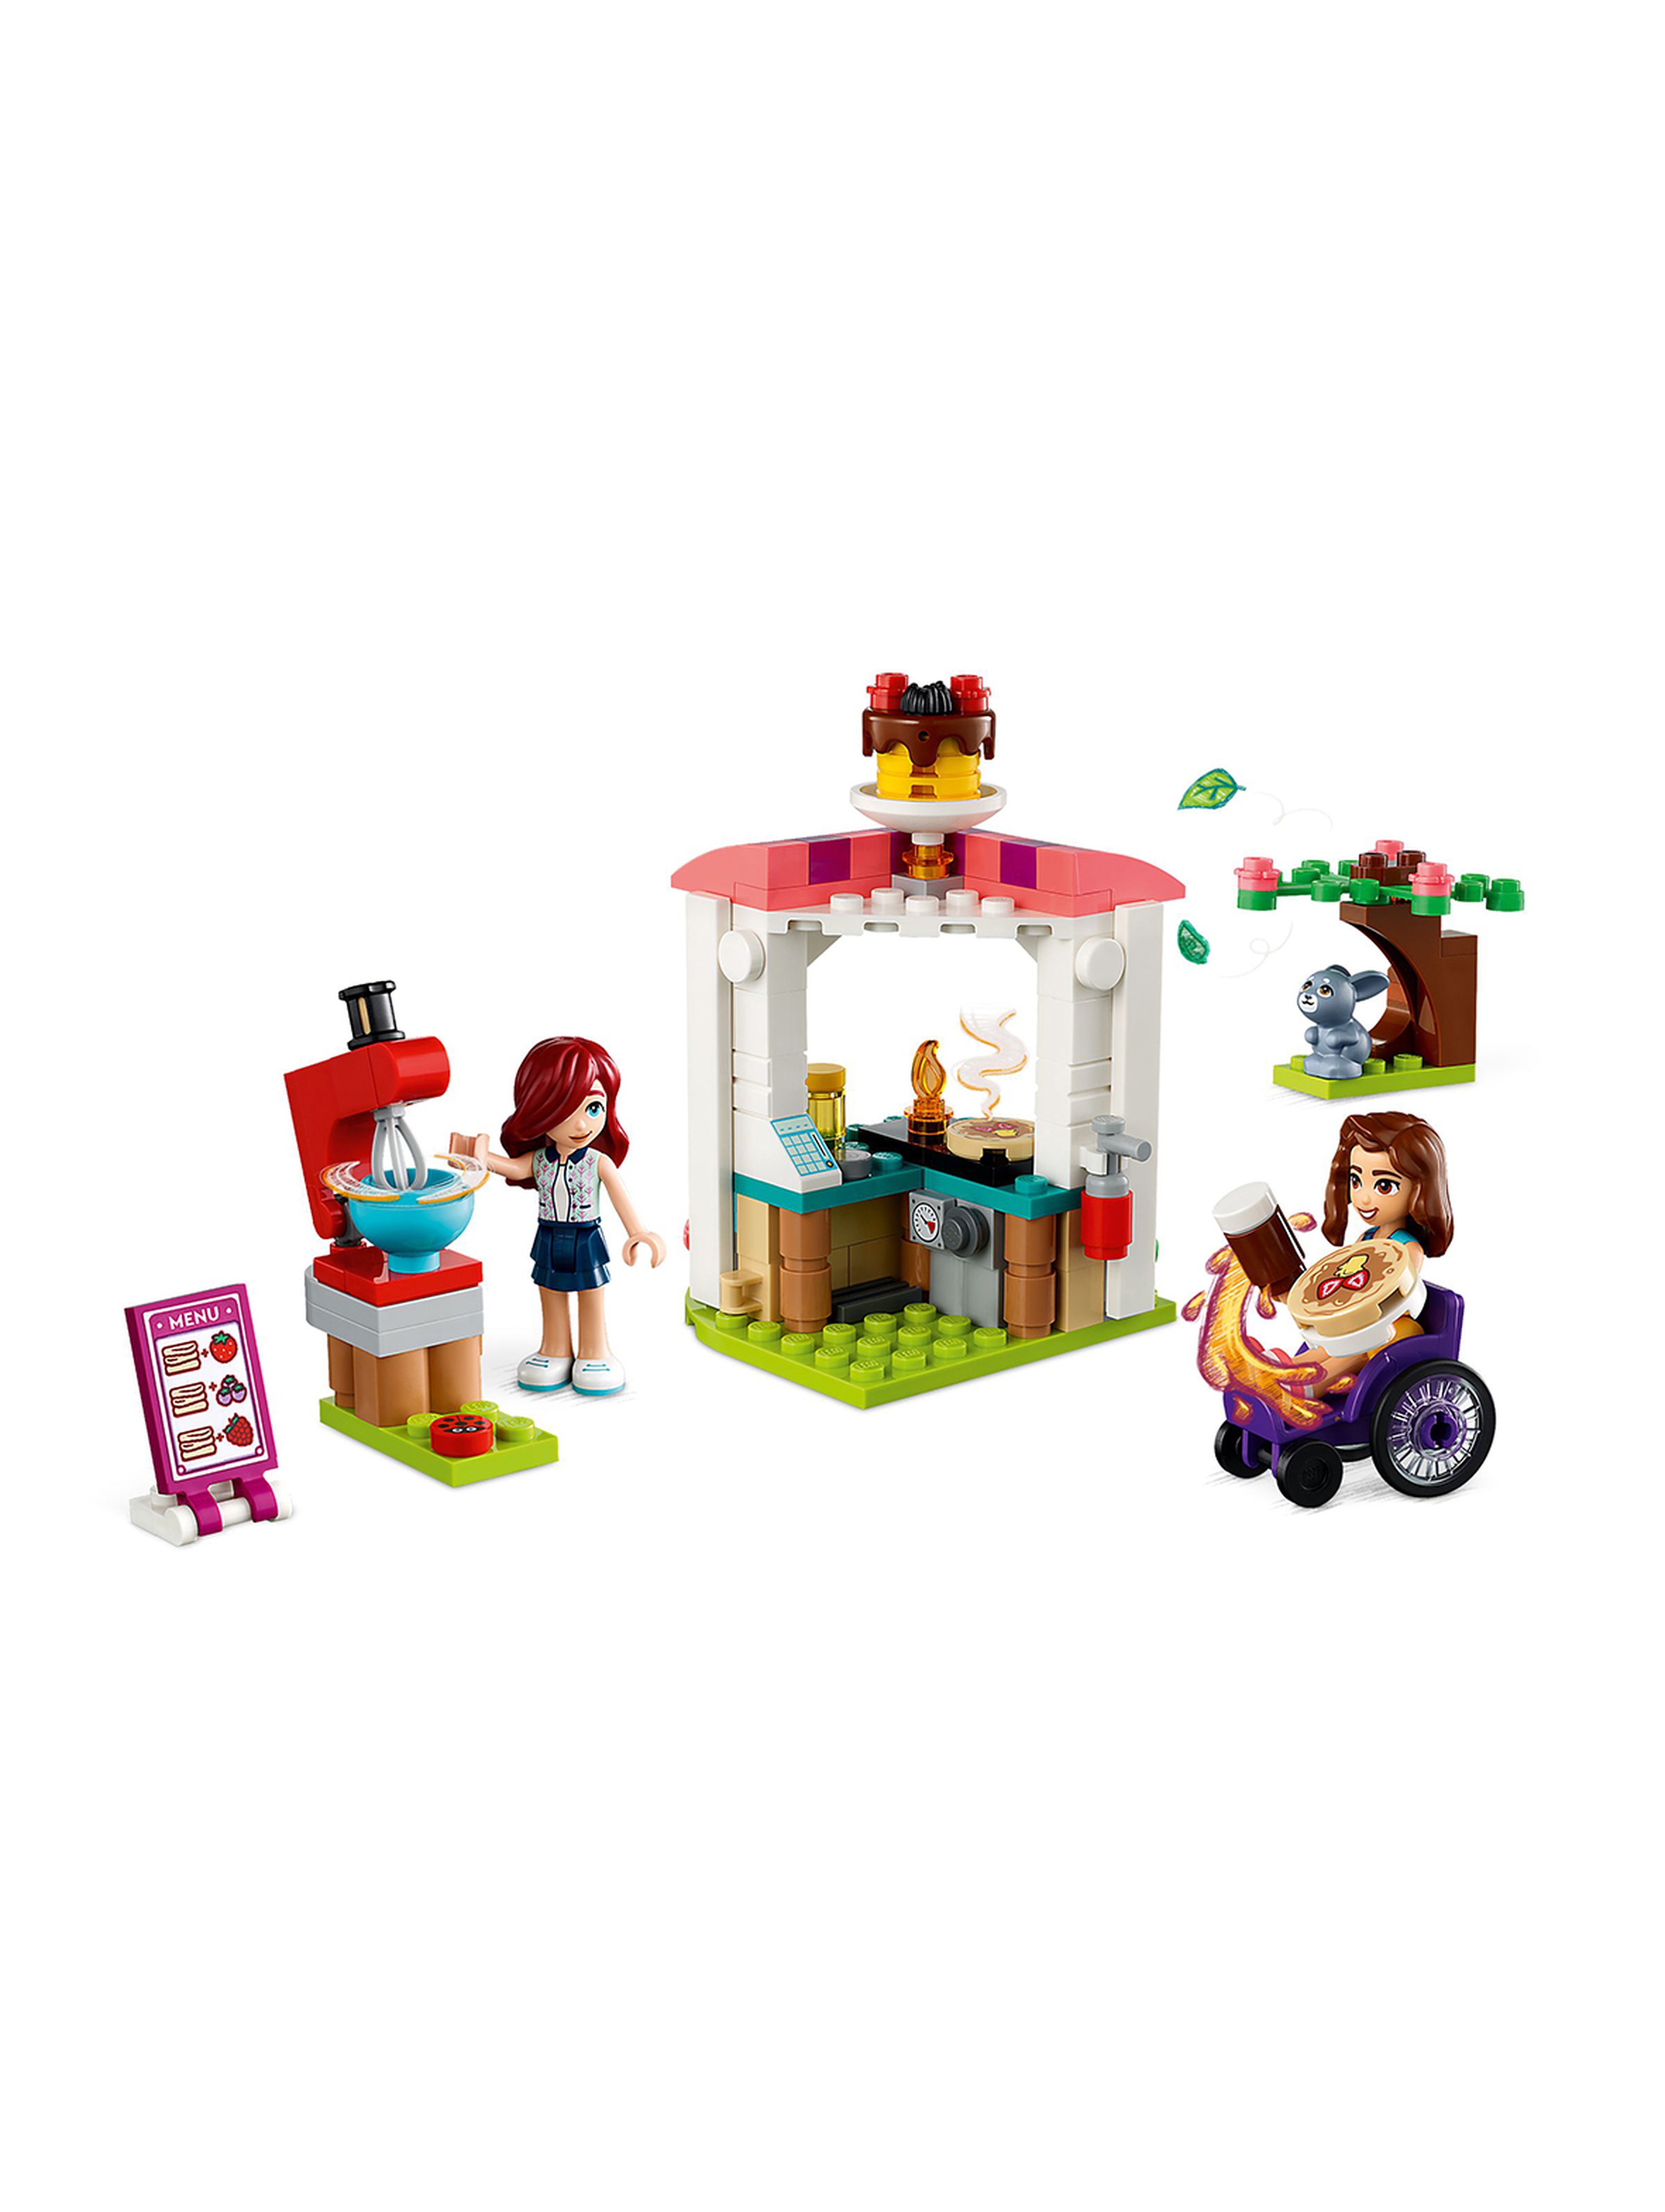 Klocki LEGO Friends 41753 Naleśnikarnia - 157 elementów, wiek 6 +